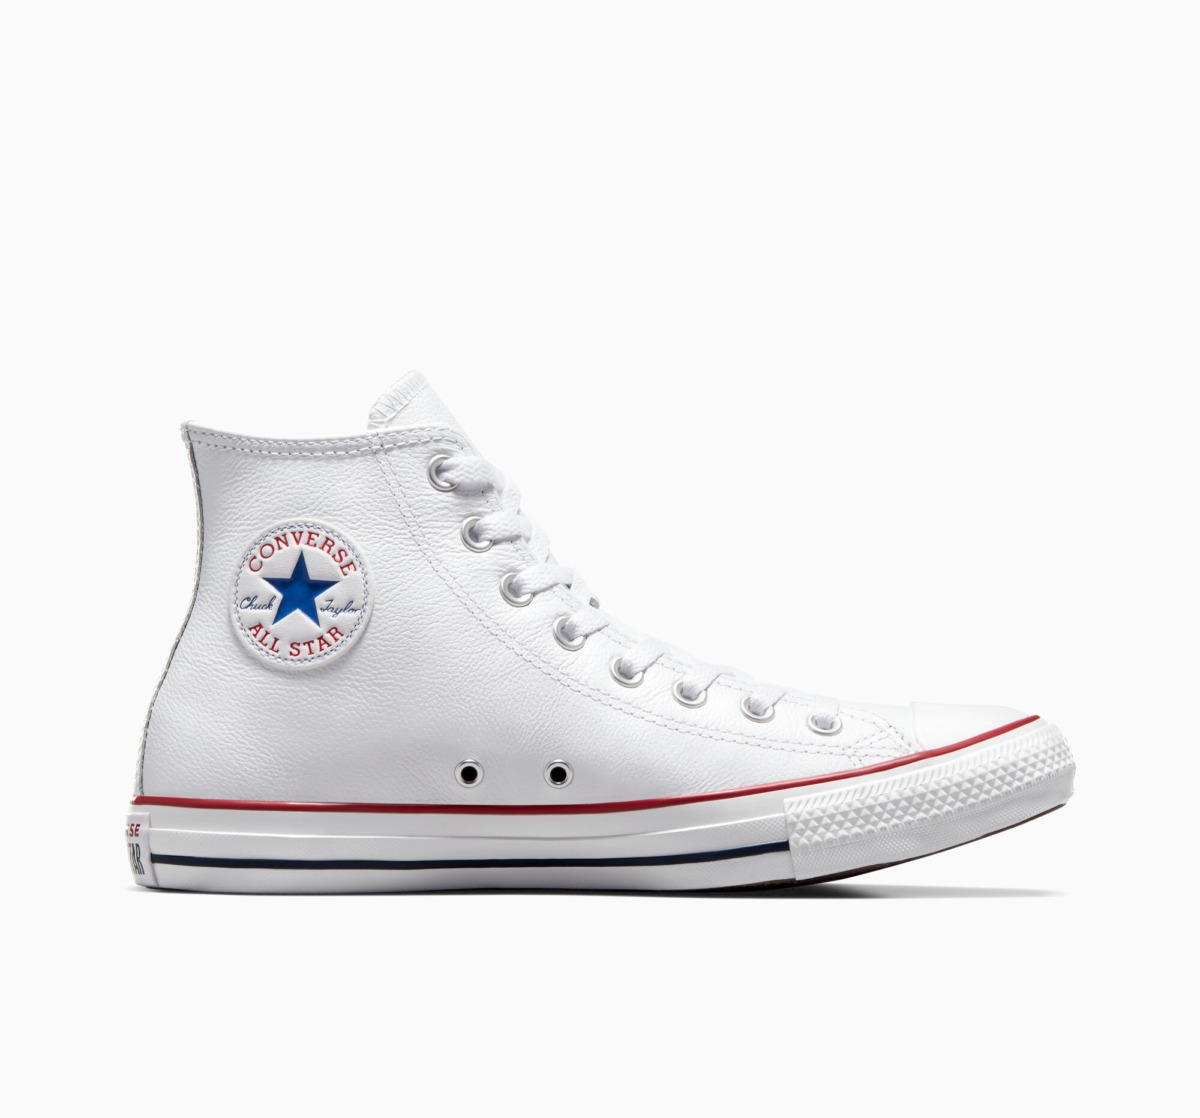 All Star - Chucks in White - Converse - Man GOOFASH